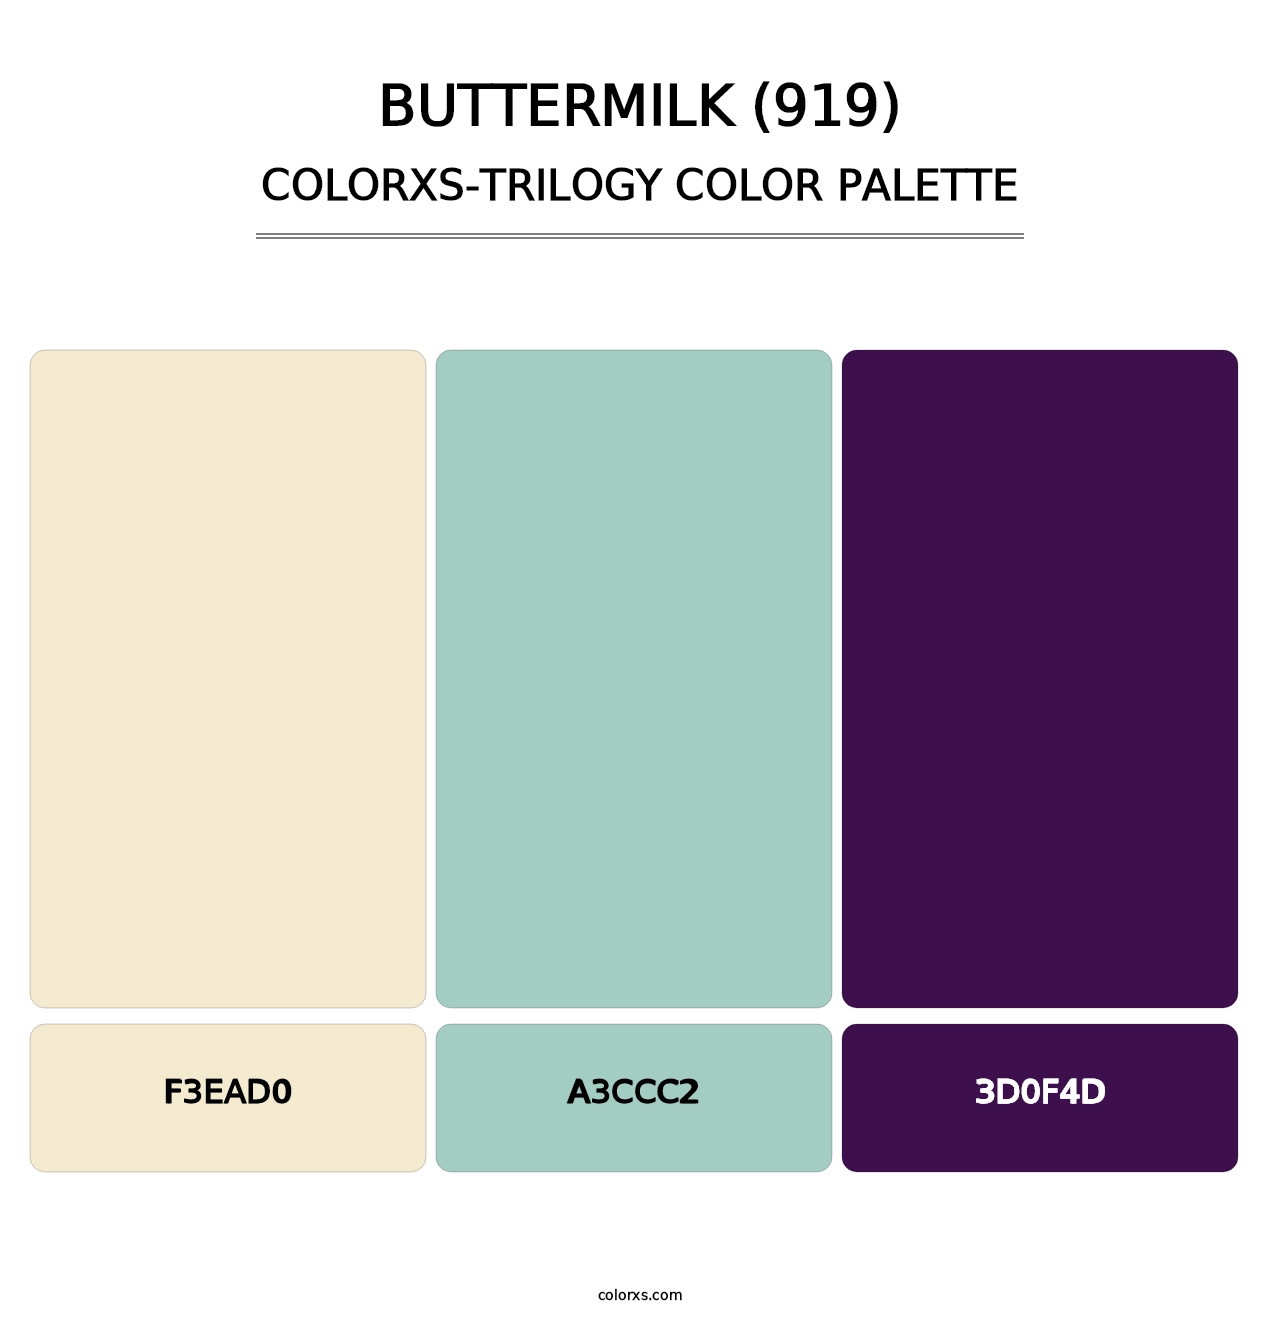 Buttermilk (919) - Colorxs Trilogy Palette